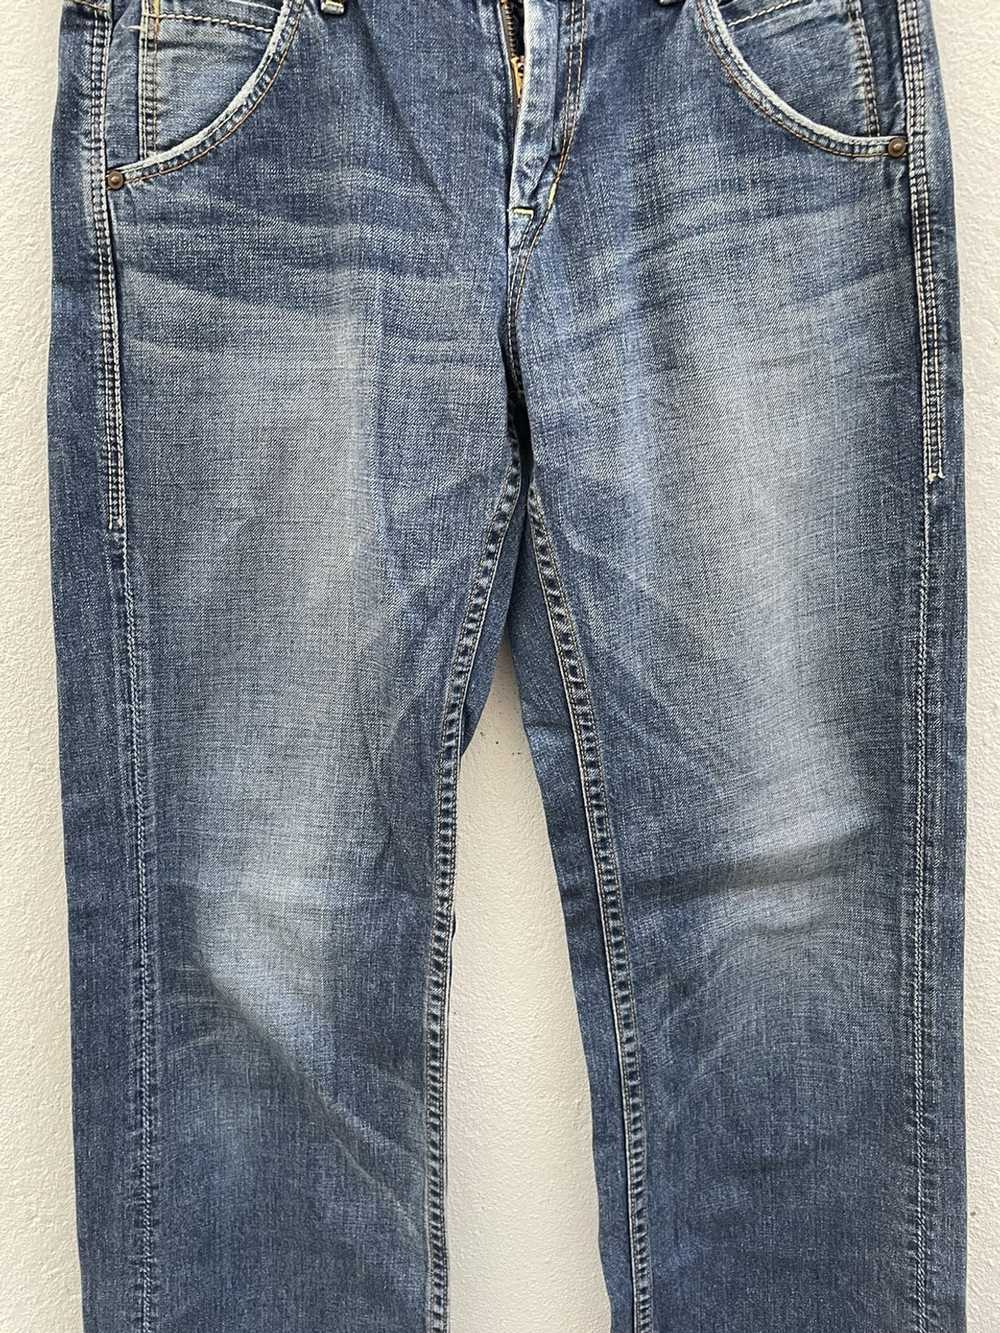 Japanese Brand × John Bull John Bull Jeans - image 4